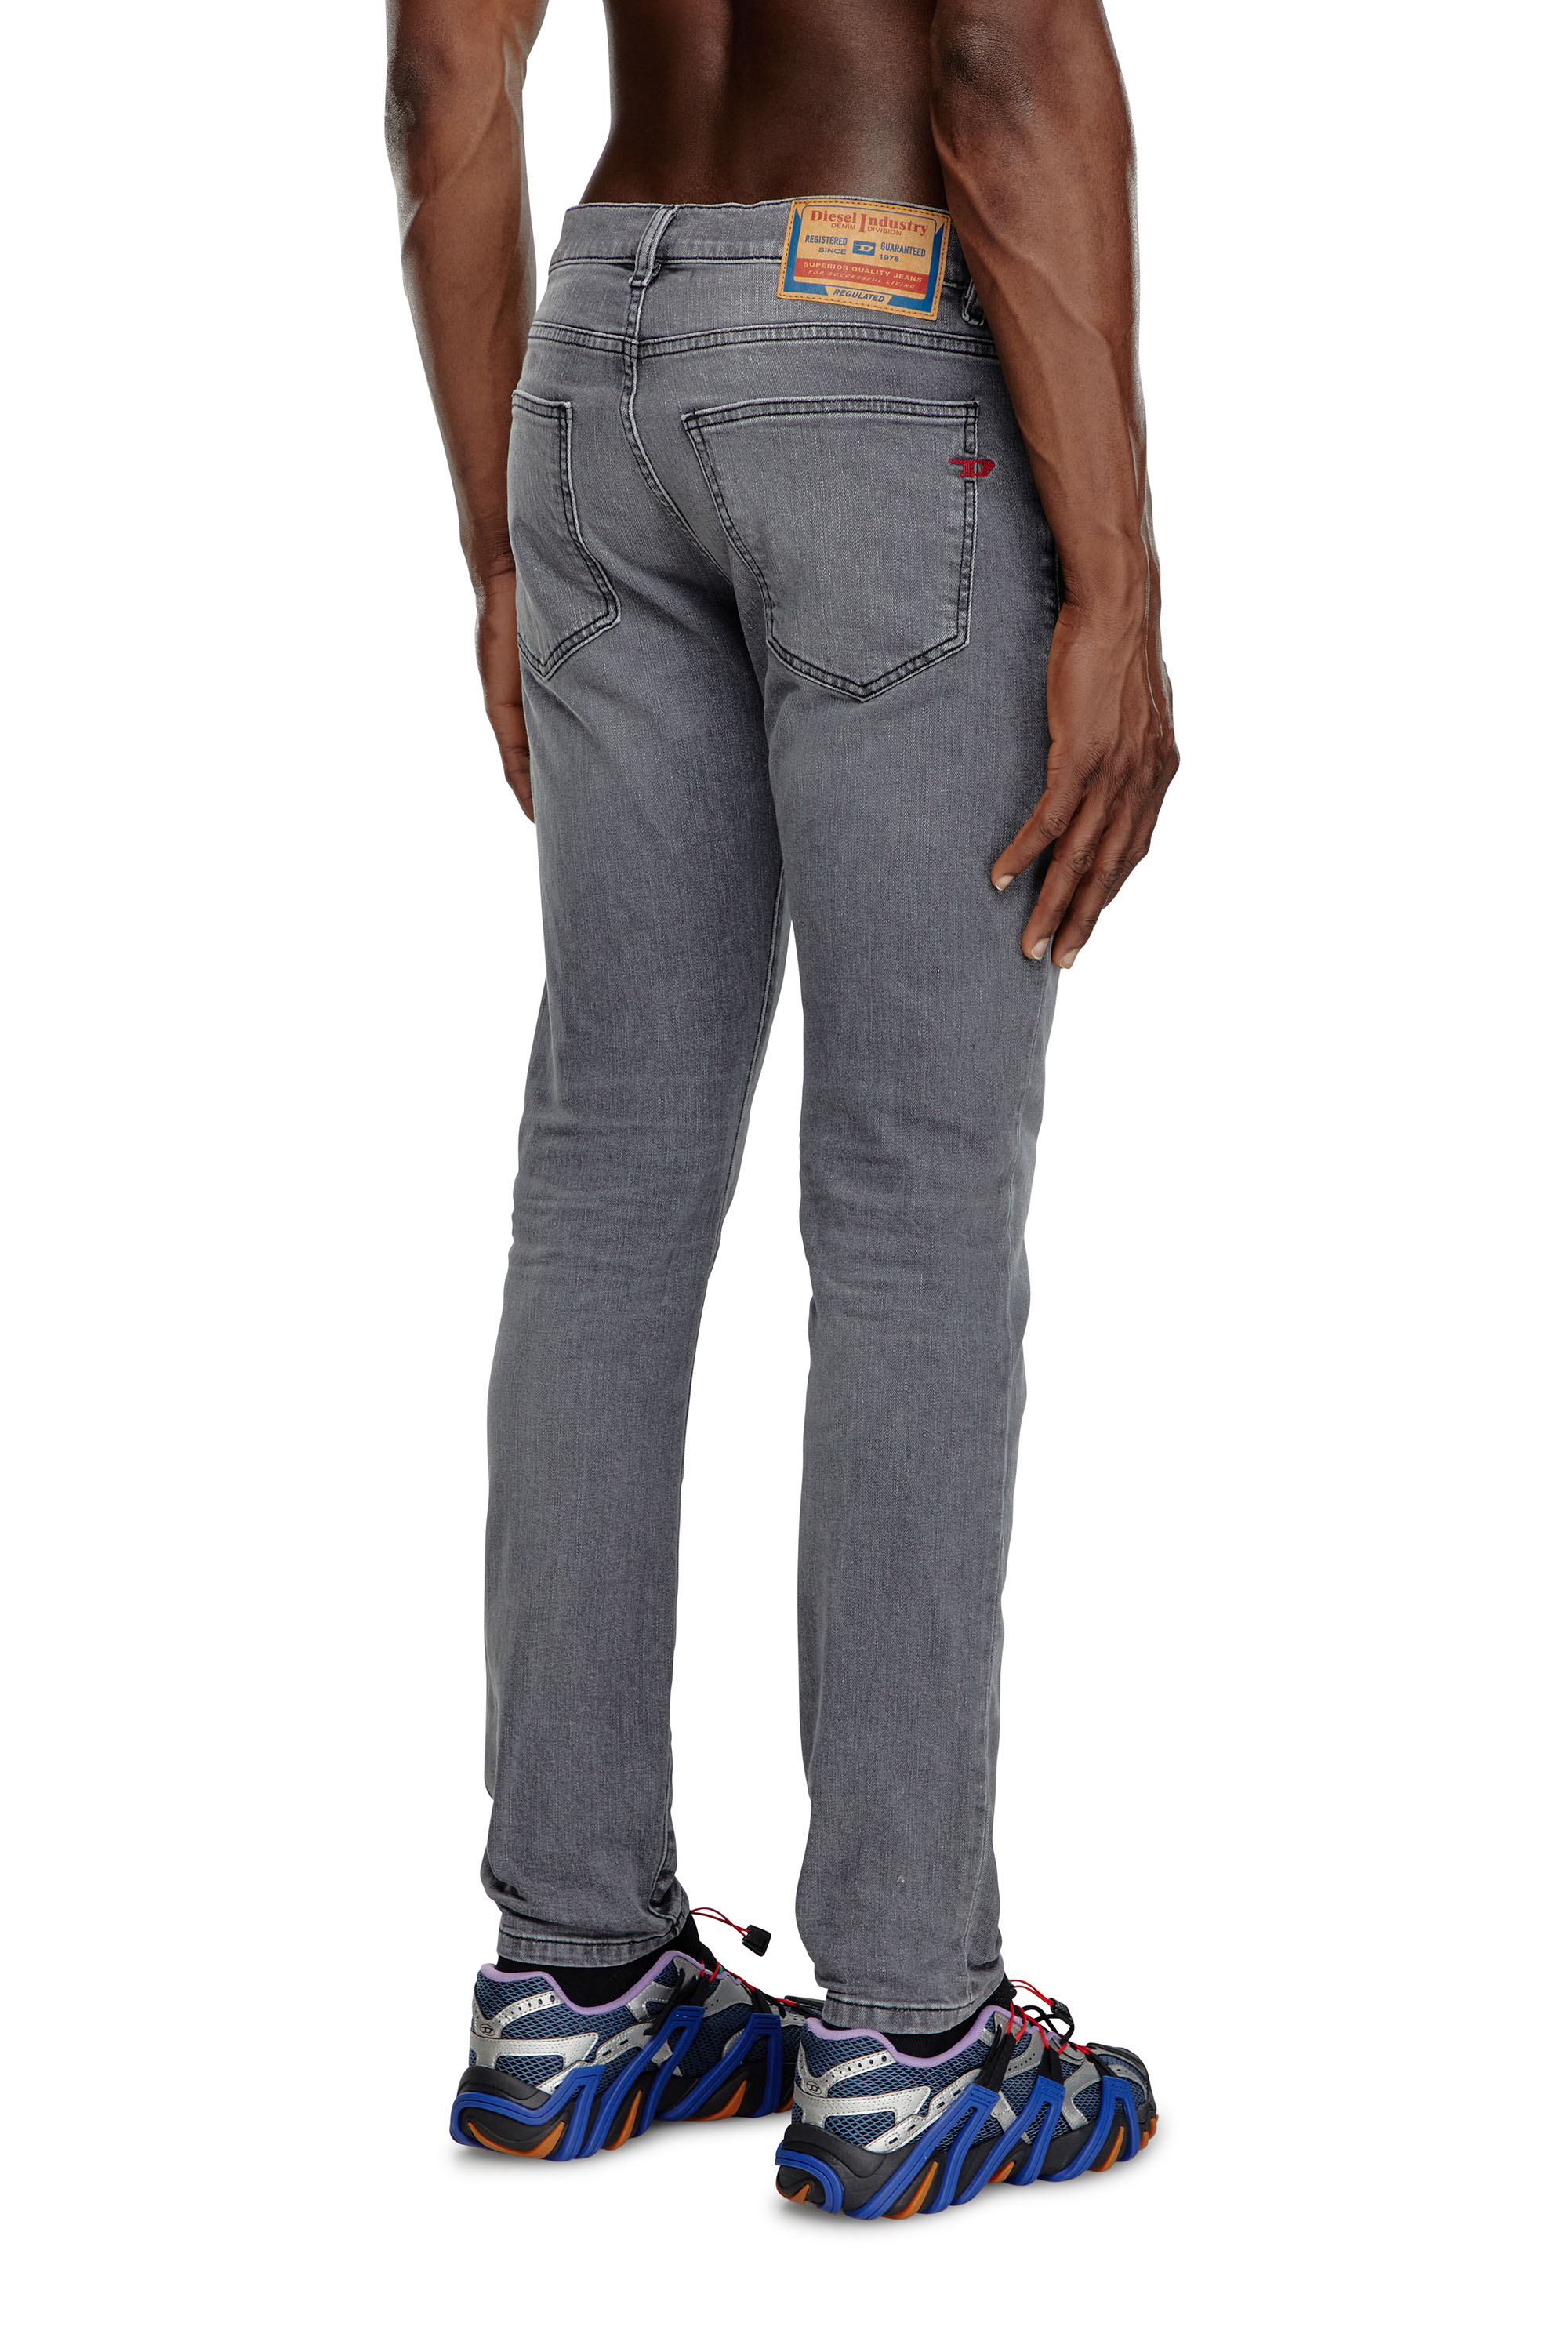 Diesel - Slim Jeans 2019 D-Strukt 0GRDK, Hombre Slim Jeans - 2019 D-Strukt in Gris - Image 4